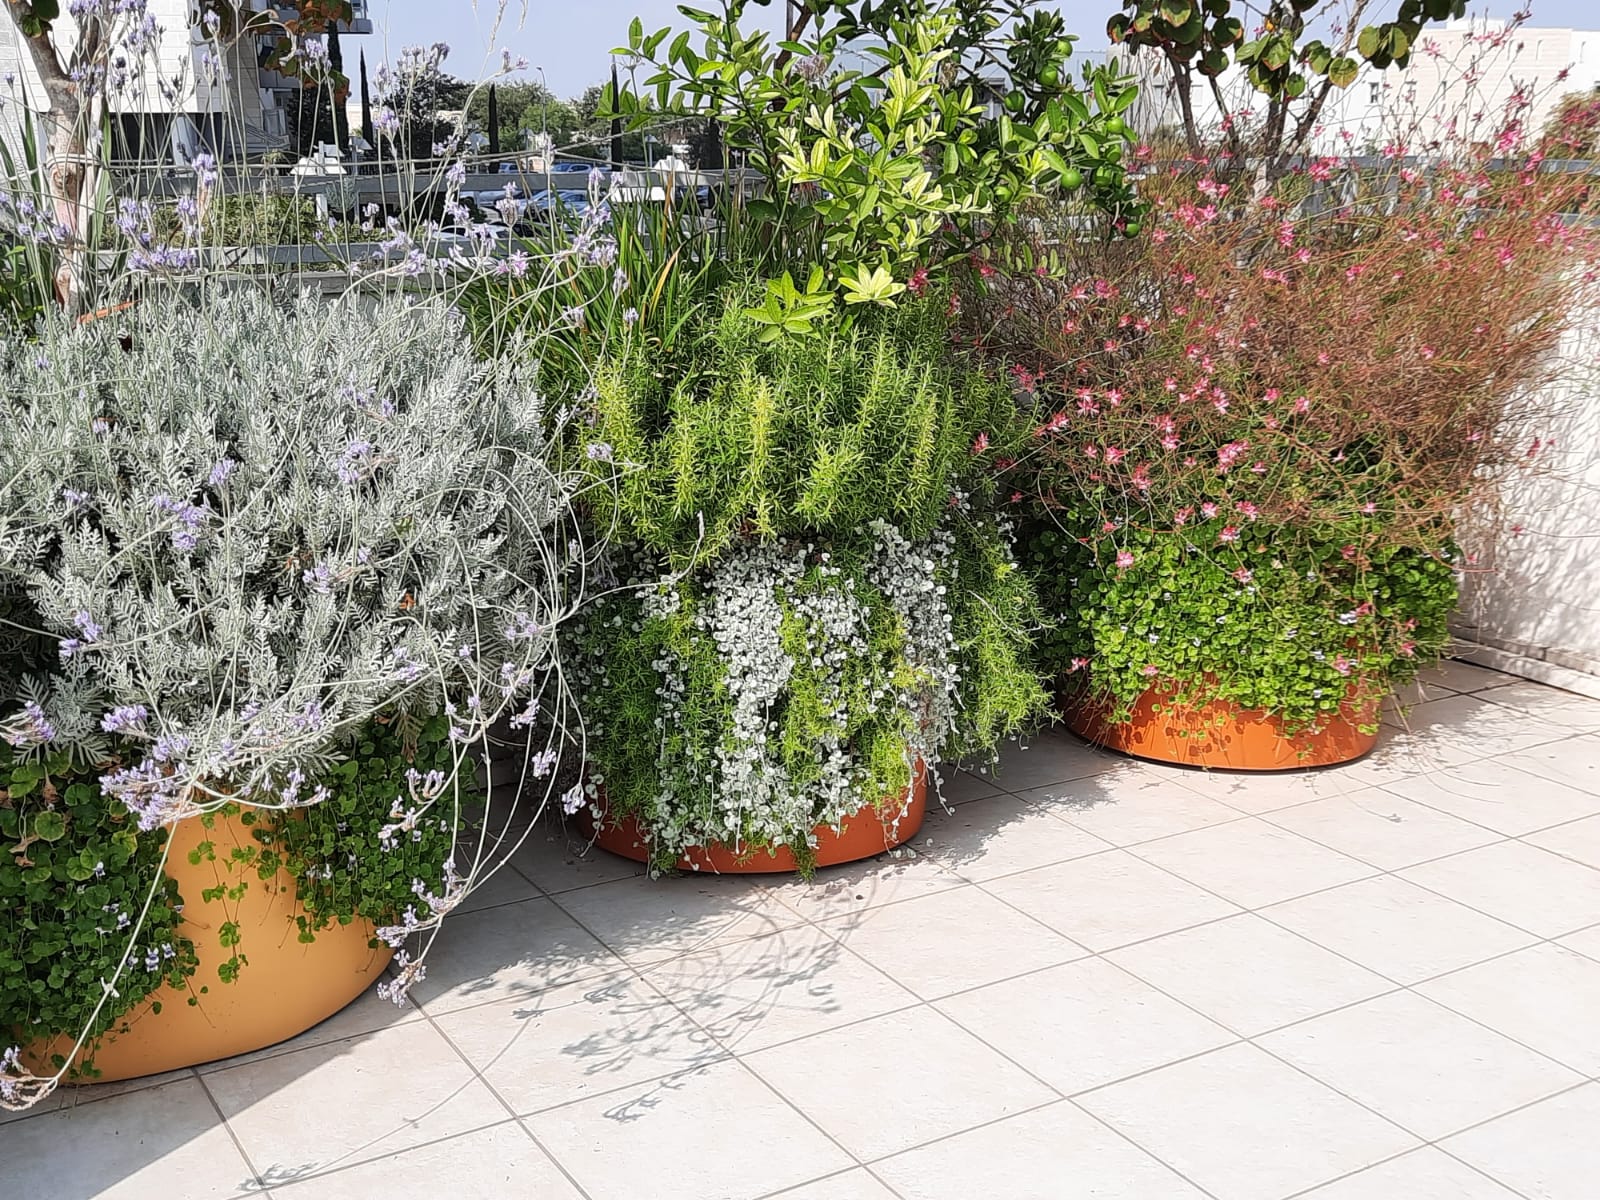 צמחייה מגוונת עם מערכת דישון חשמלית שהותקנה על גג במרפסת - גן בגג